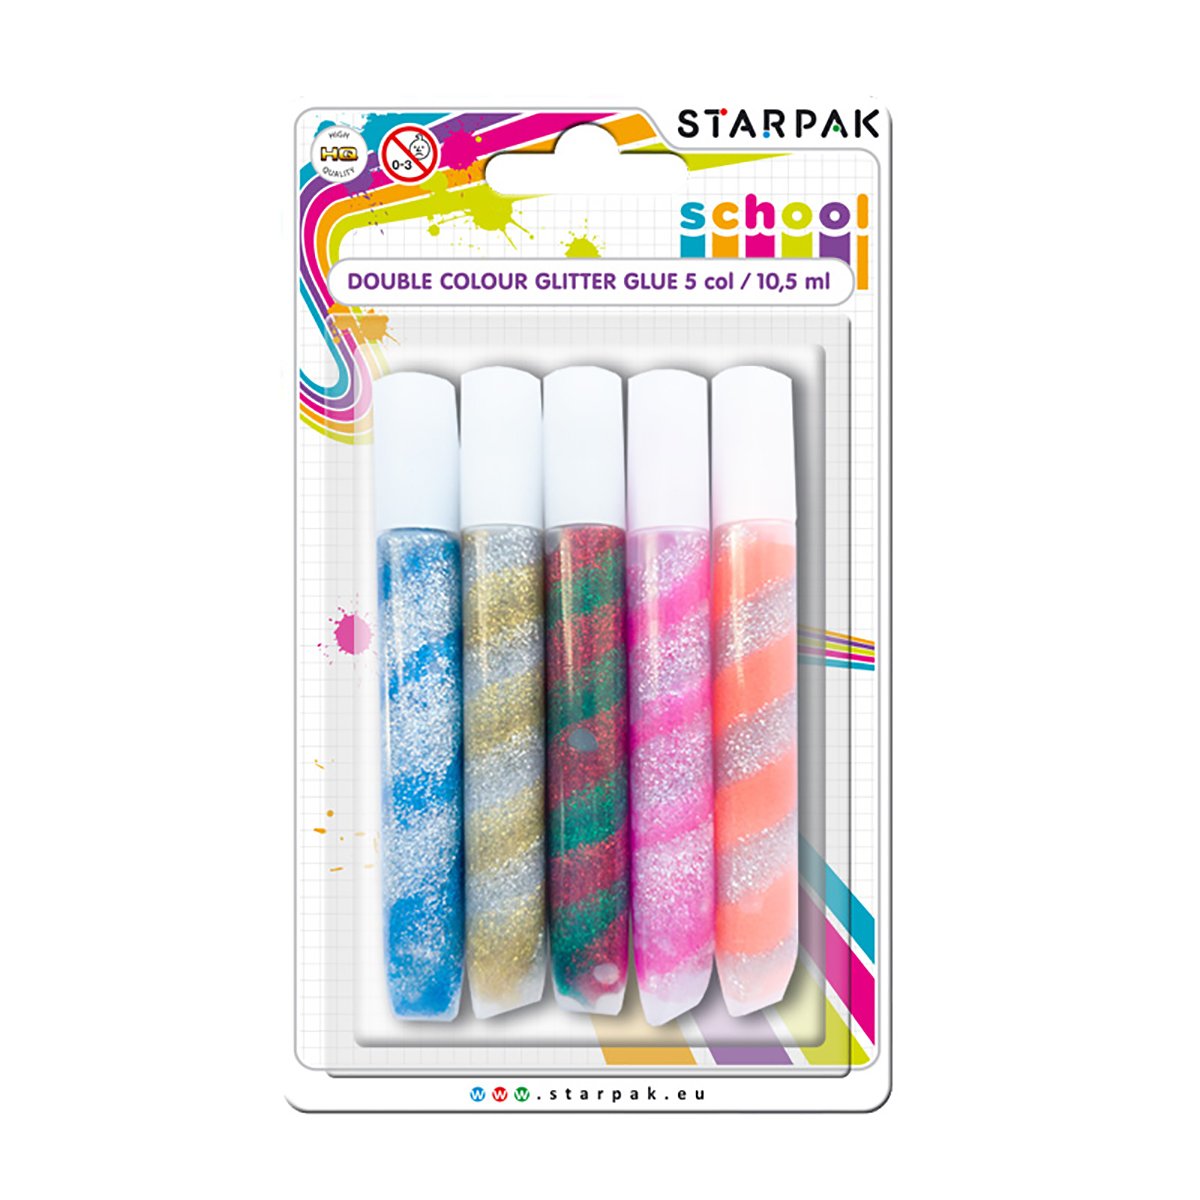 Lipici cu glitter in doua culori Starpak, 10.5 ml Rechizite si accesorii 2023-10-01 3